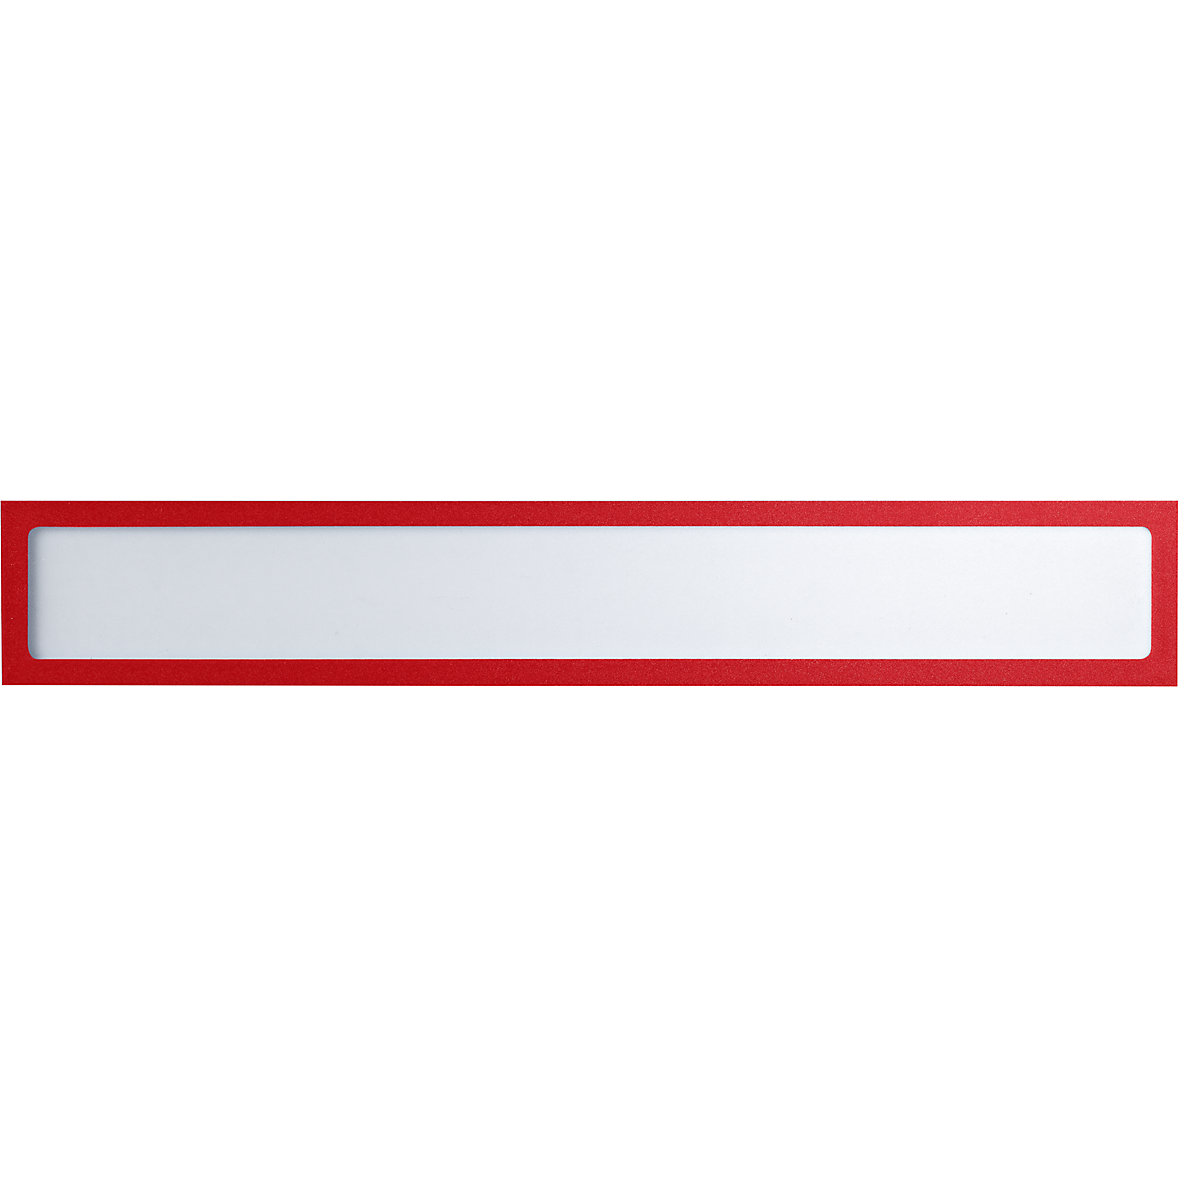 Magnetni informacijski džep – eurokraft basic, za natpise, DIN A3 poprečno / DIN A2 uspravno, 435 x 60 mm, okvir u crvenoj boji, pak. 10 kom.-4